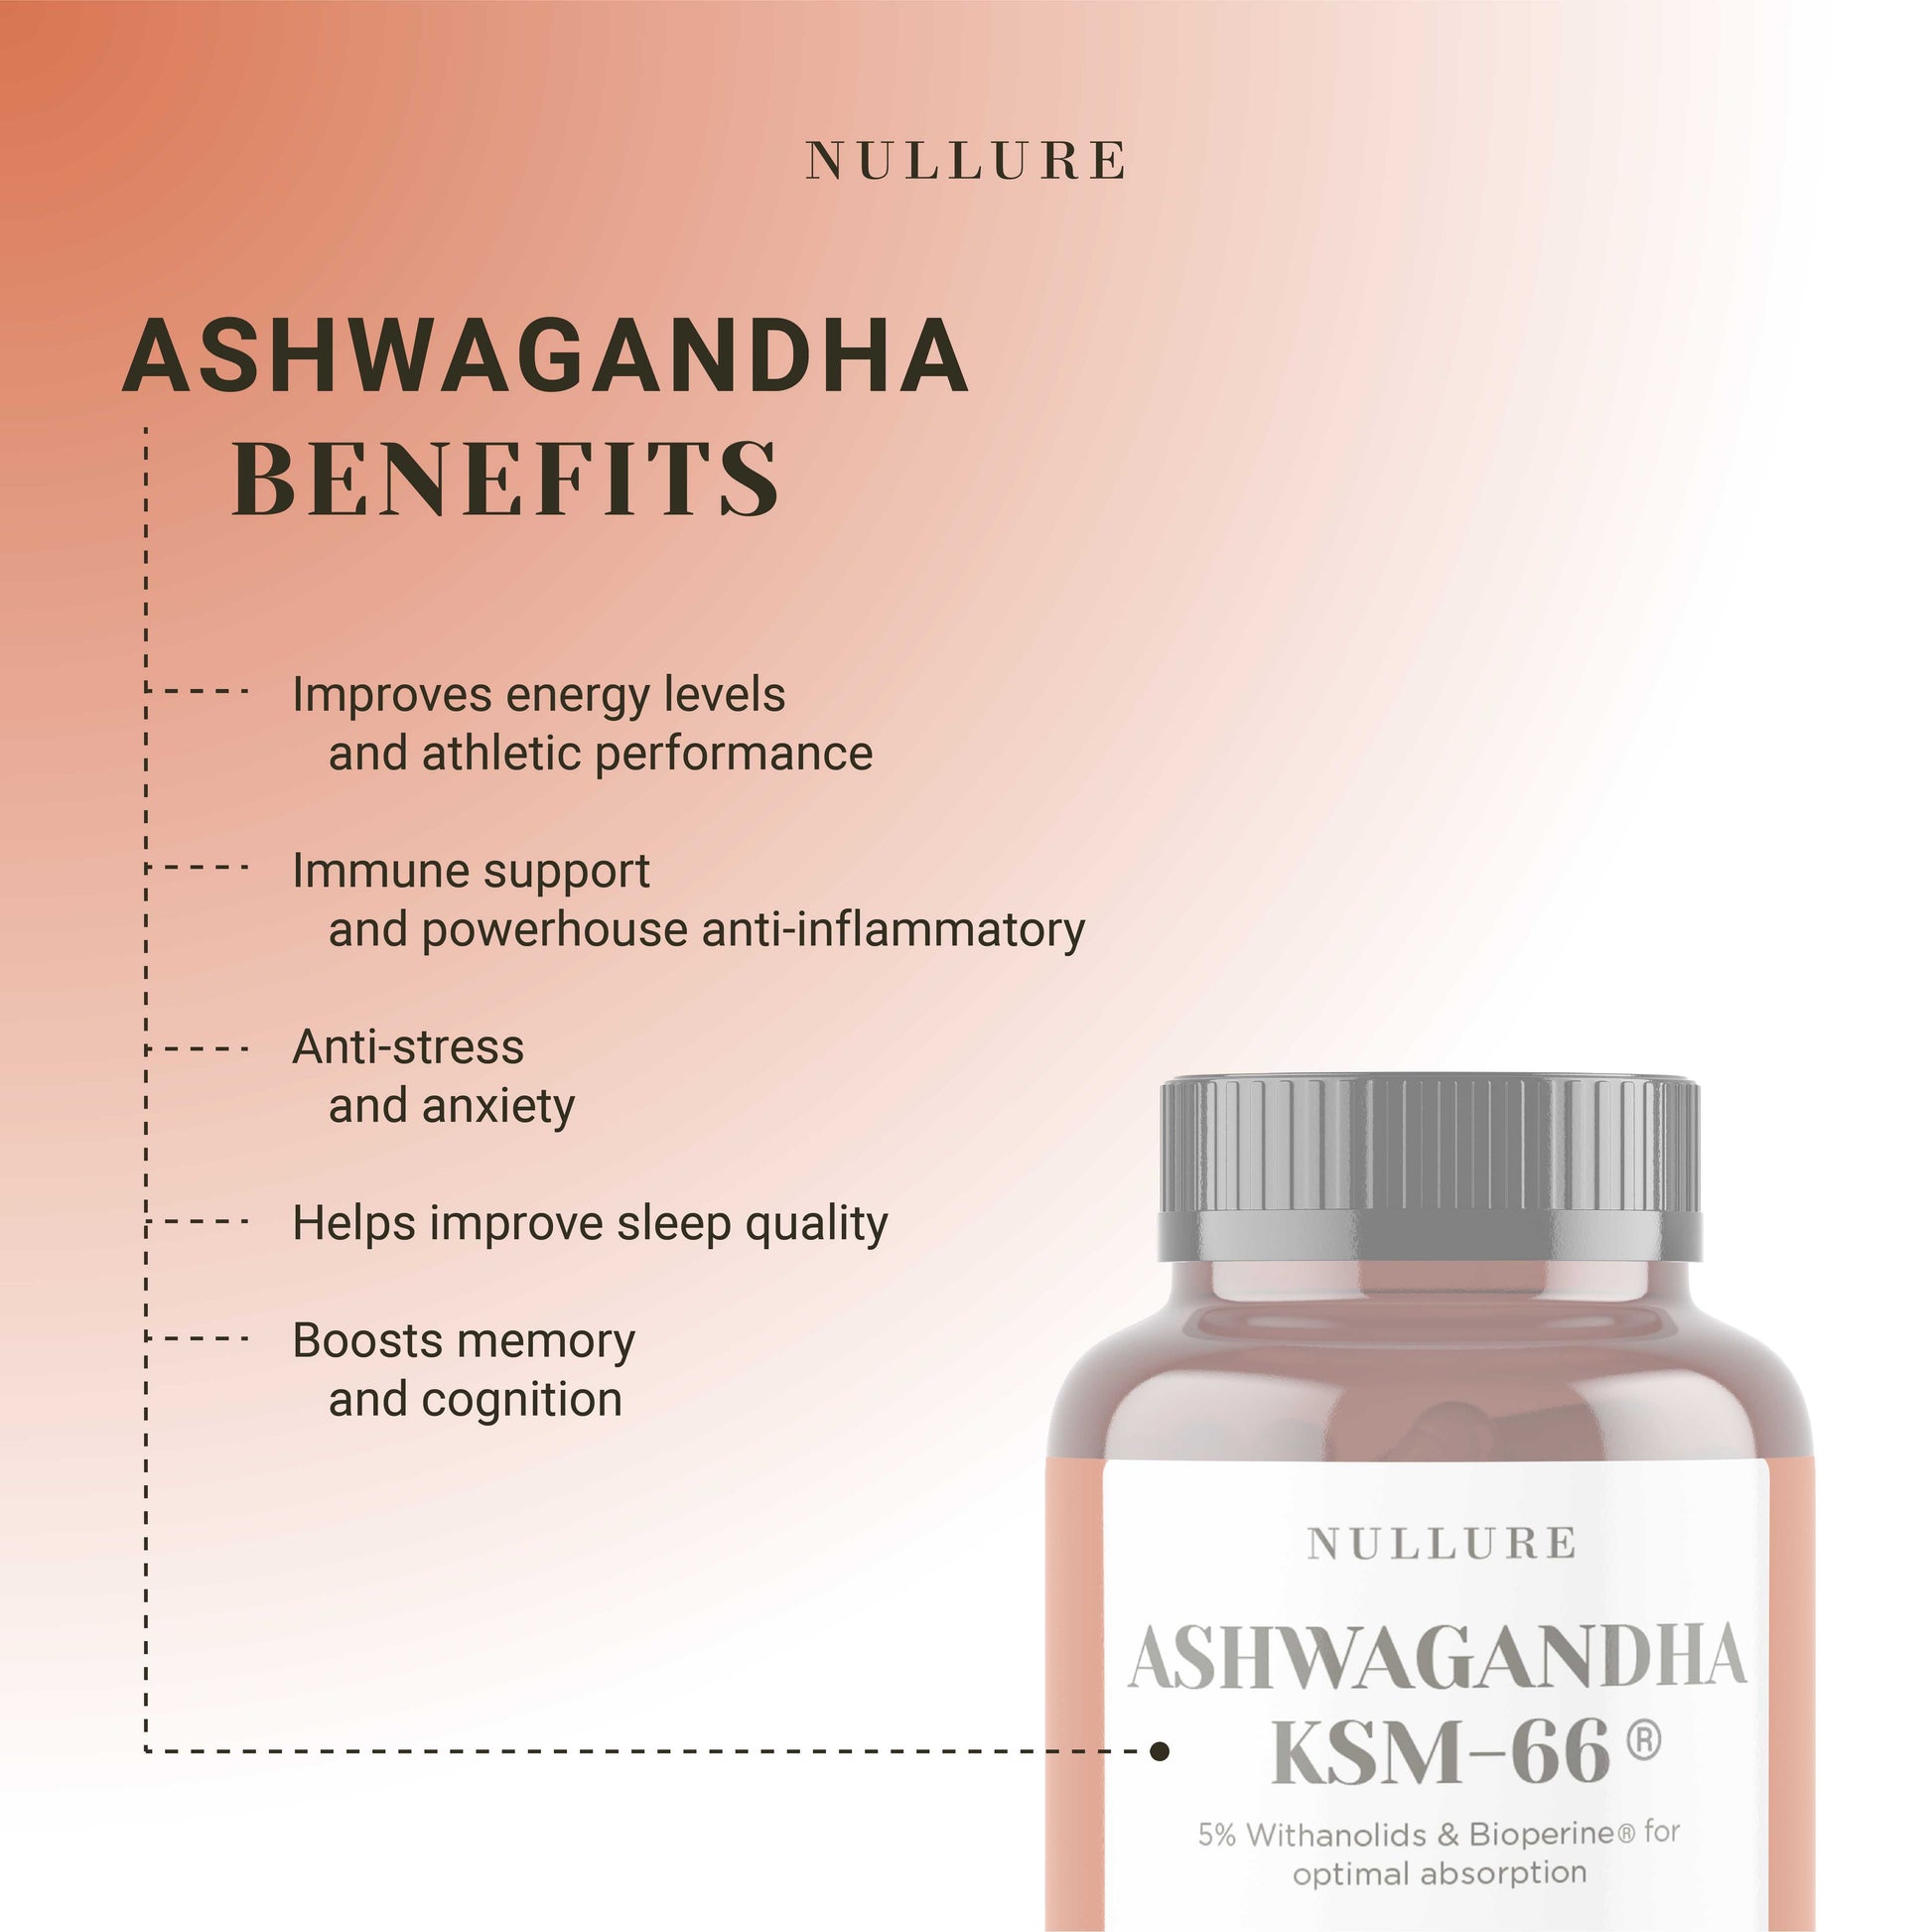 Aswhagandha-KSM66-Benefici